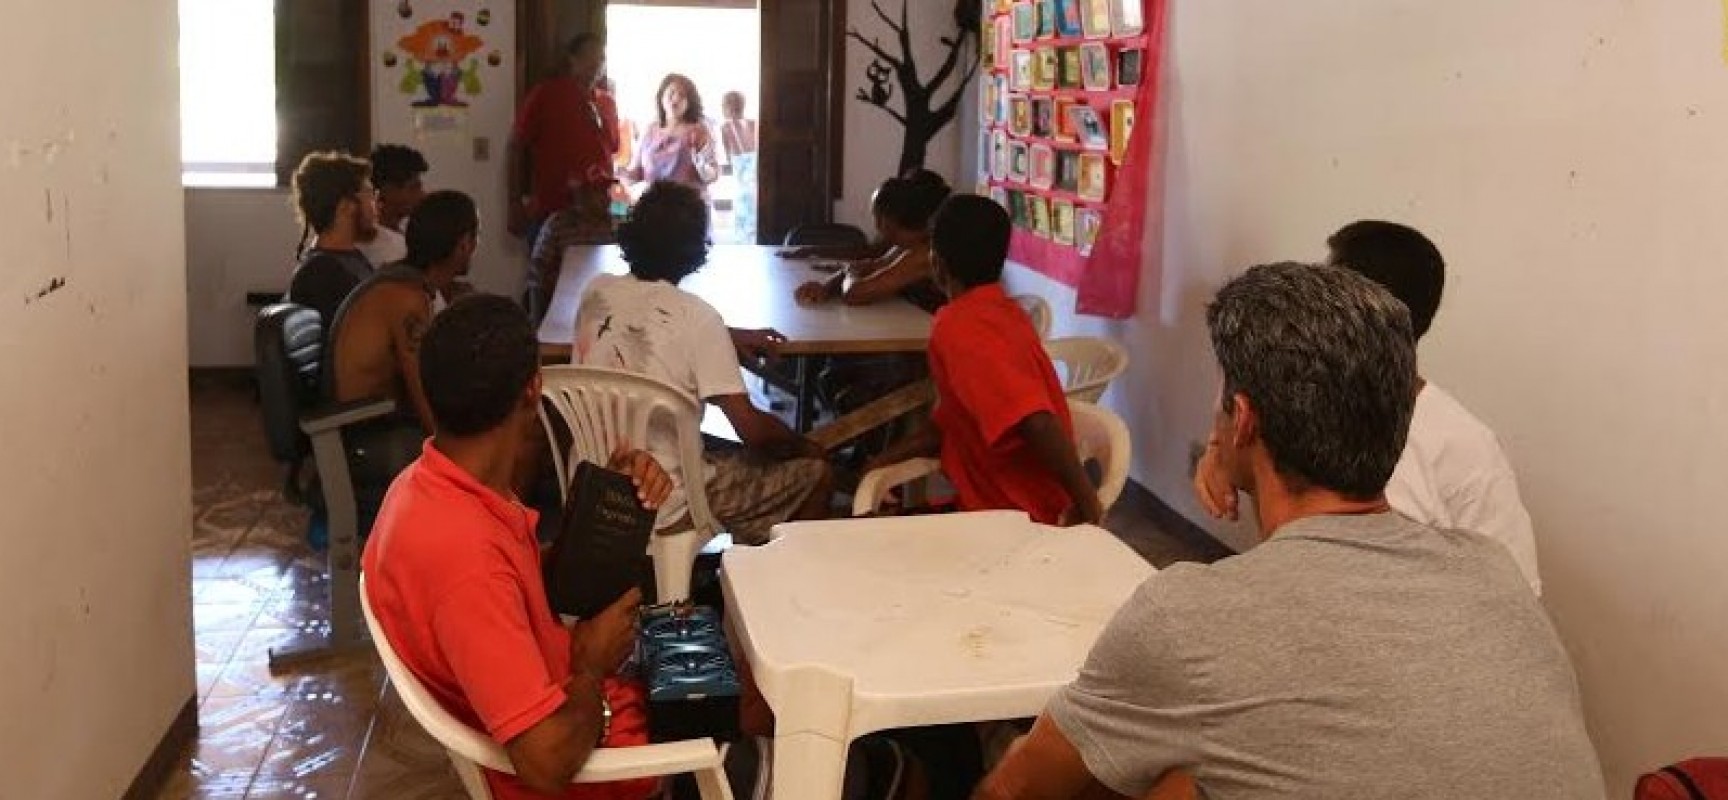 Centro Pop de Ilhéus realiza atendimento diário às pessoas em situação de rua